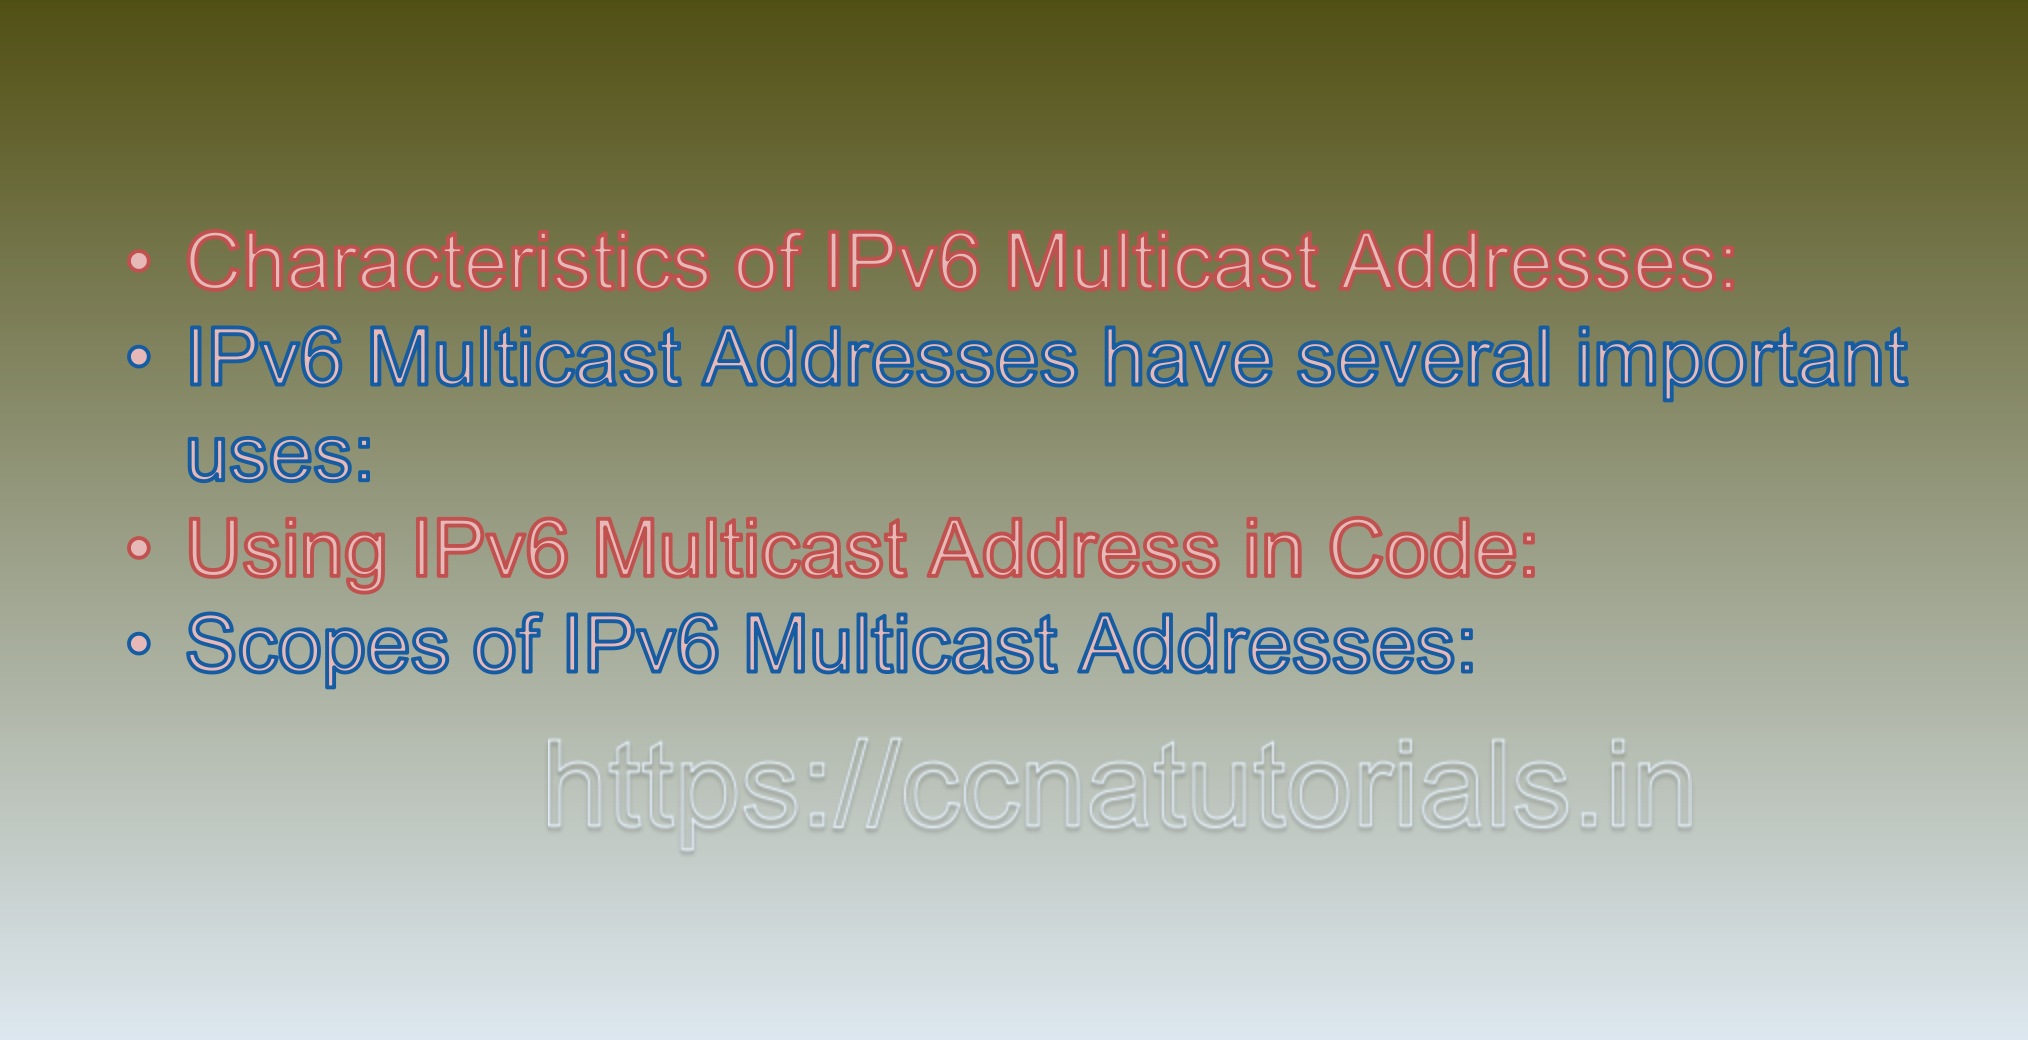 IPv6 Multicast Addresses, ccna, ccna tutorials